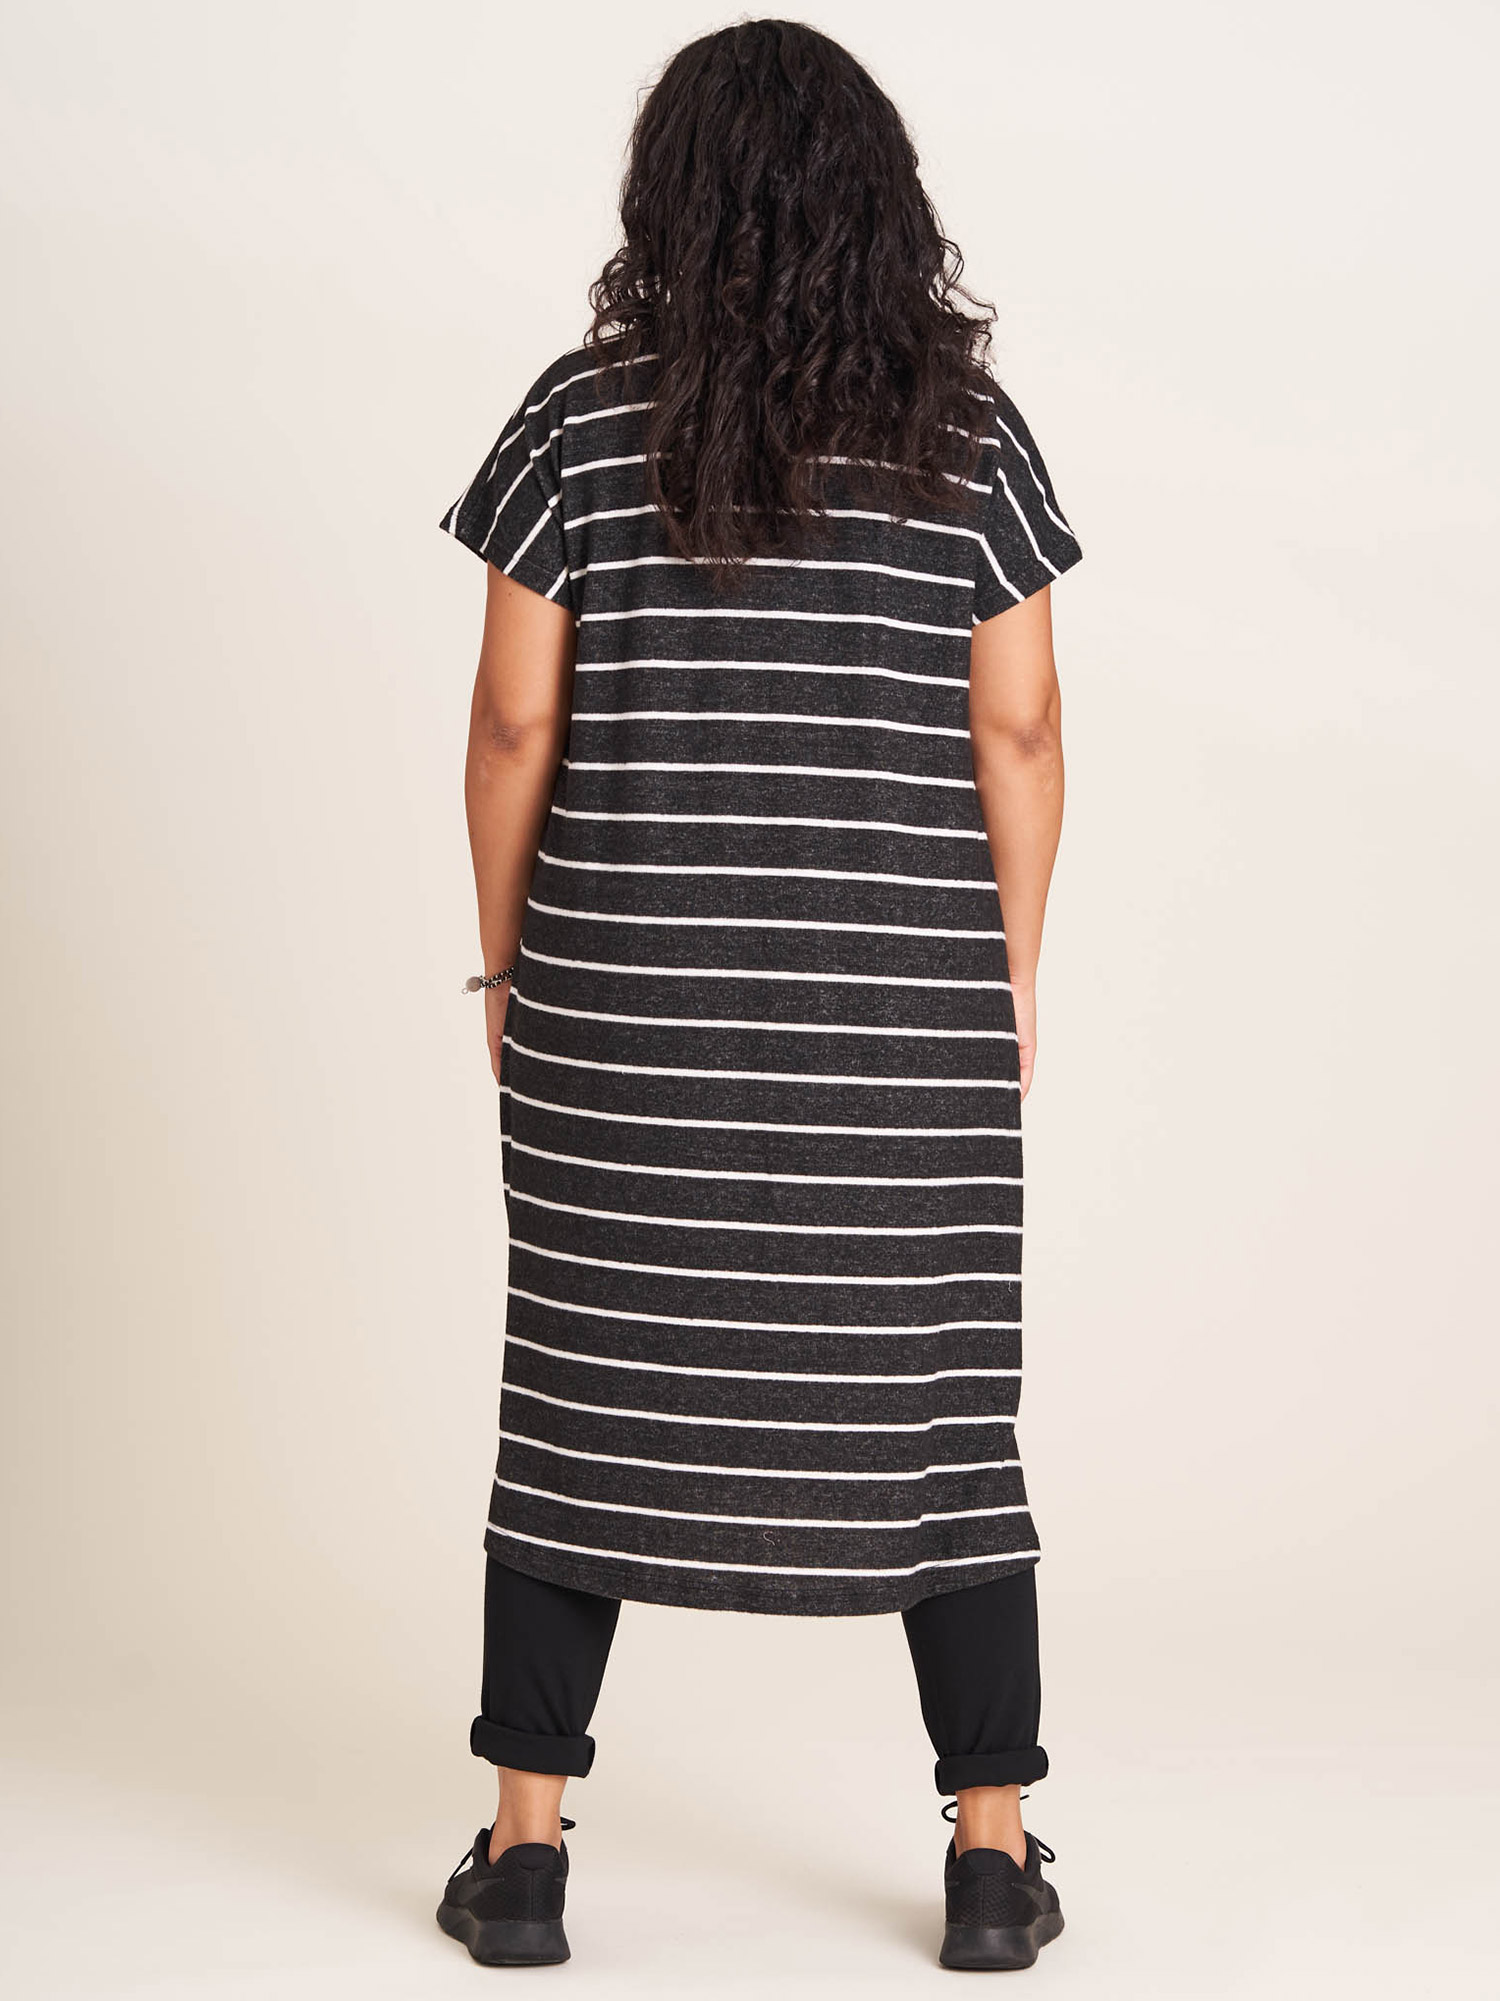 ANNE-GRETE - Myk svart kjole med hvite striper fra Studio